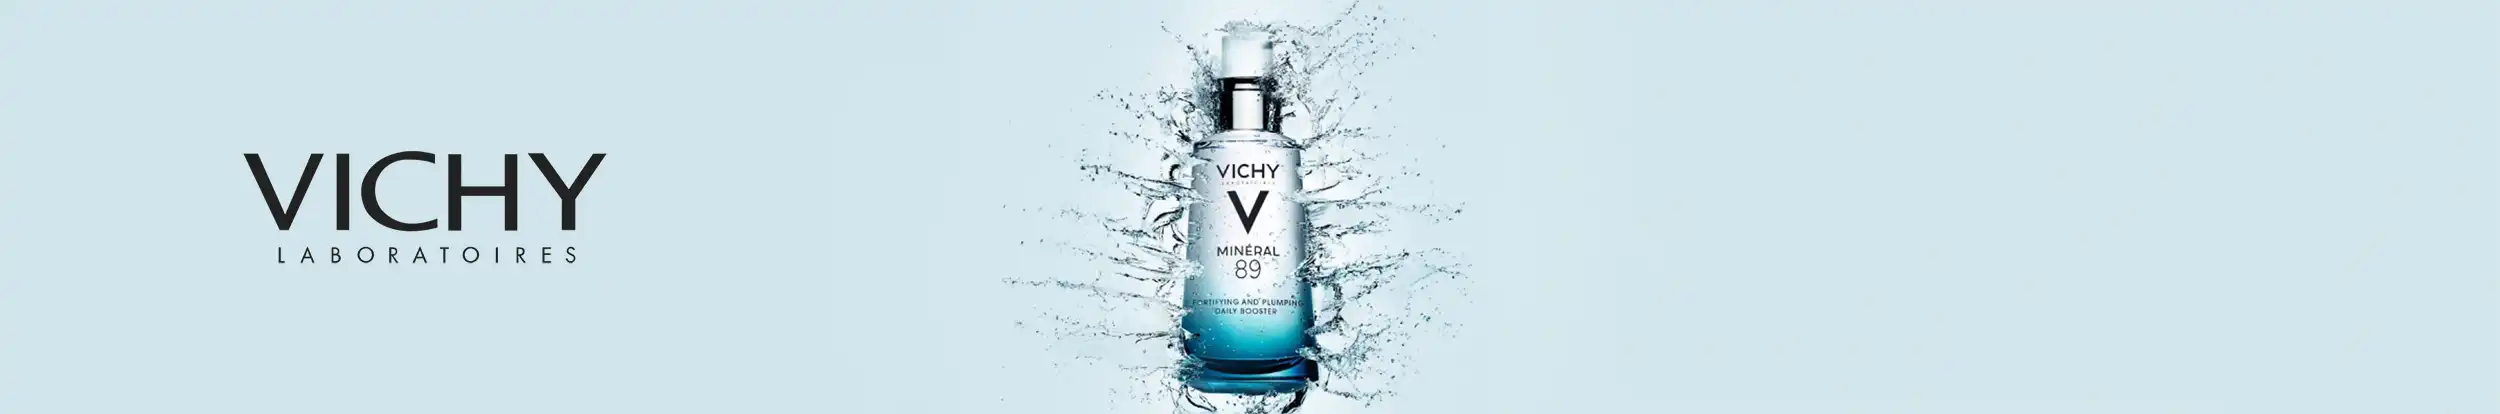 Vichy: Expertos en Cuidado de la Piel. Descubre Nuestra Landing Exclusiva con Productos Innovadores para una Piel Saludable y Radiante. ¡Bienvenido a tu Rutina de Belleza Personalizada con Vichy